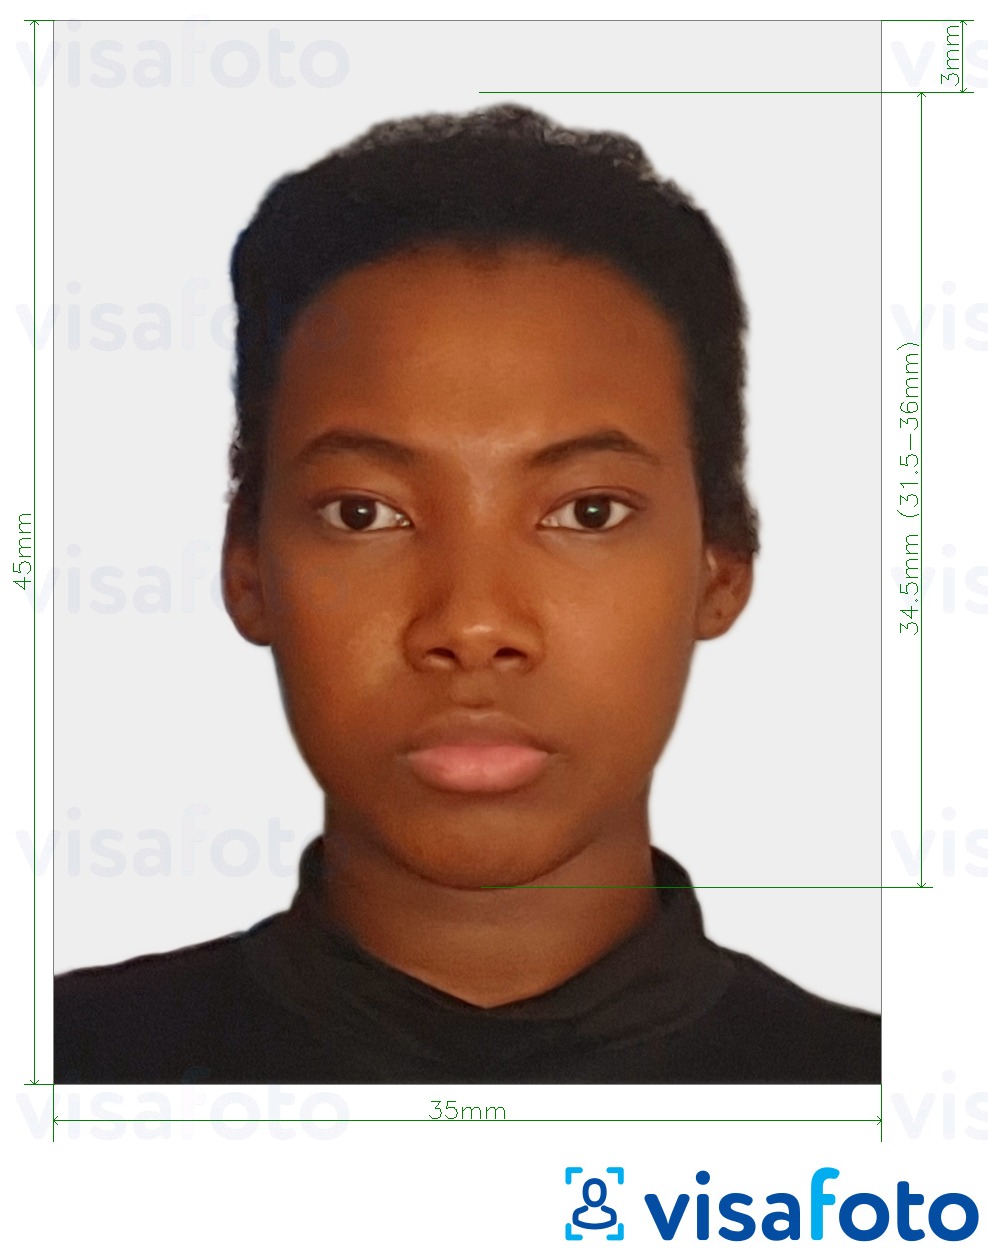 Příklad fotografie Surinamské vízum 45x35 mm (1.77x1.37 palce) s přesnou specifikací velikosti